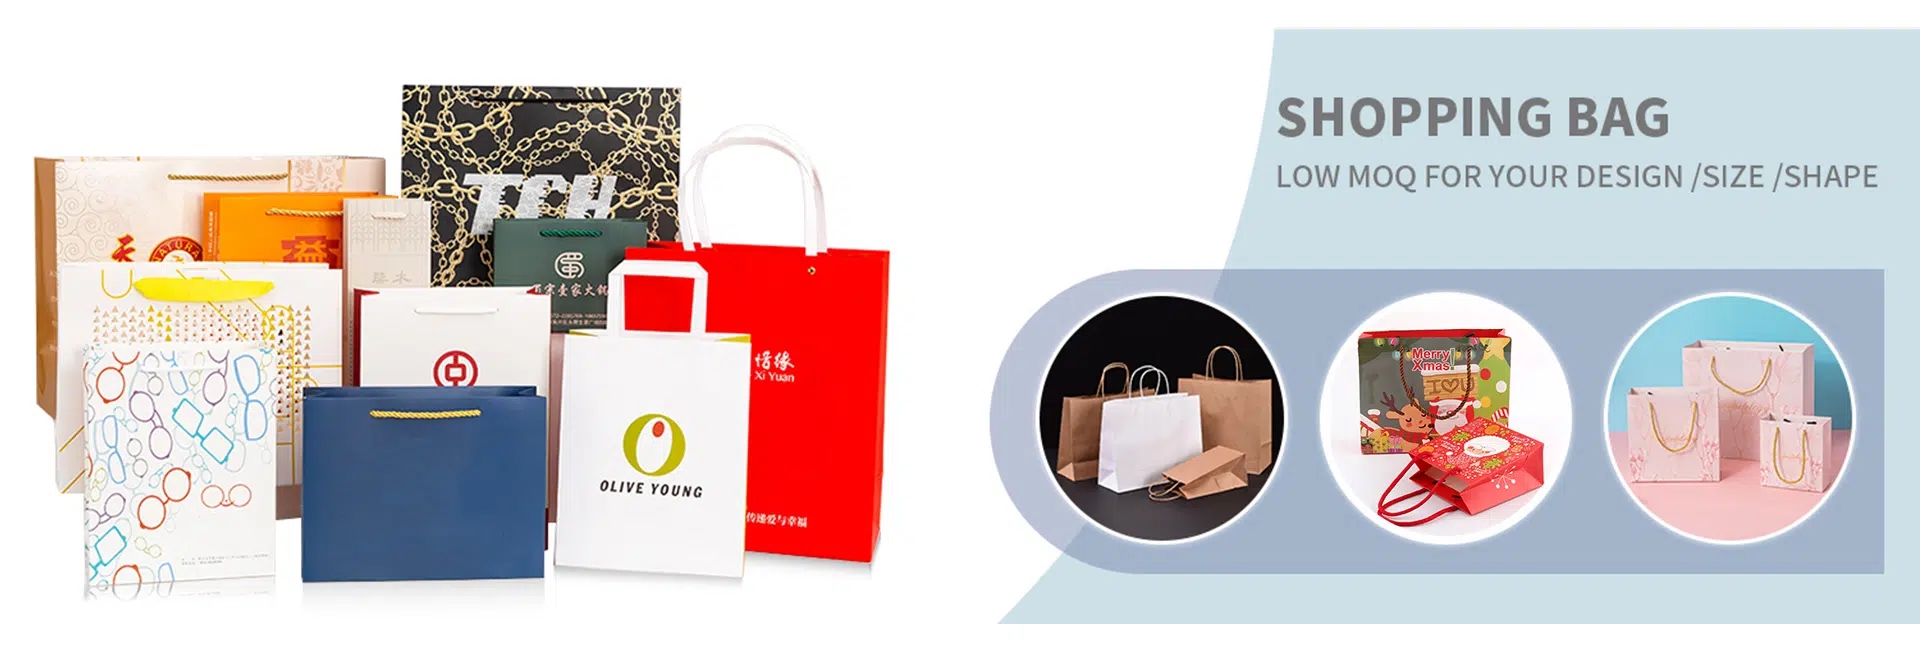 Shopping-Paper-Bag-1.jpg.webp